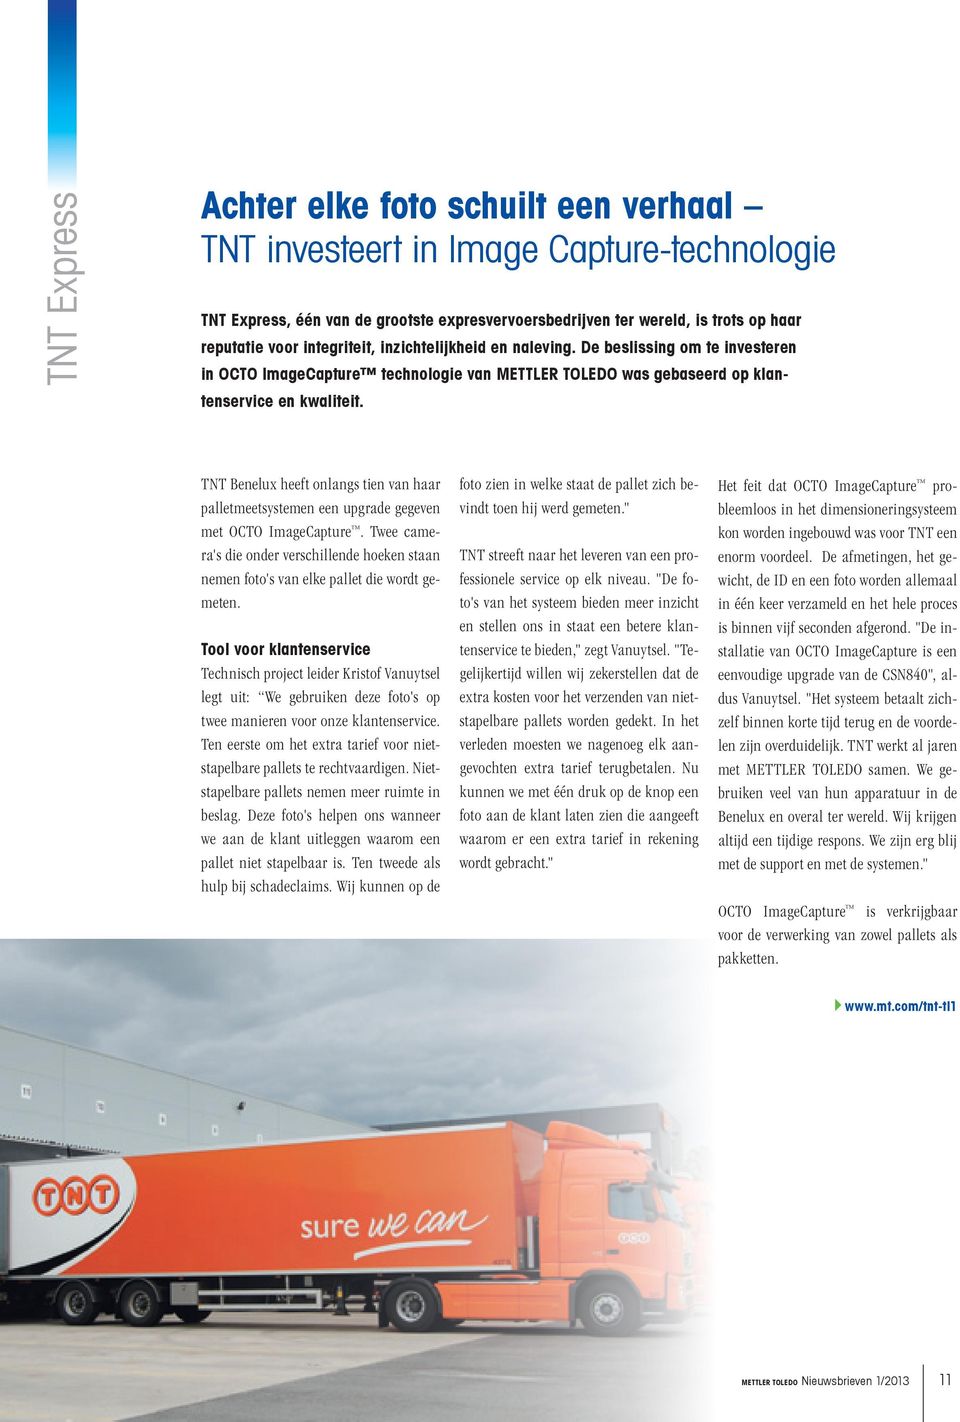 TNT Benelux heeft onlangs tien van haar palletmeetsystemen een upgrade gegeven met OCTO ImageCapture. Twee camera's die onder verschillende hoeken staan nemen foto's van elke pallet die wordt gemeten.